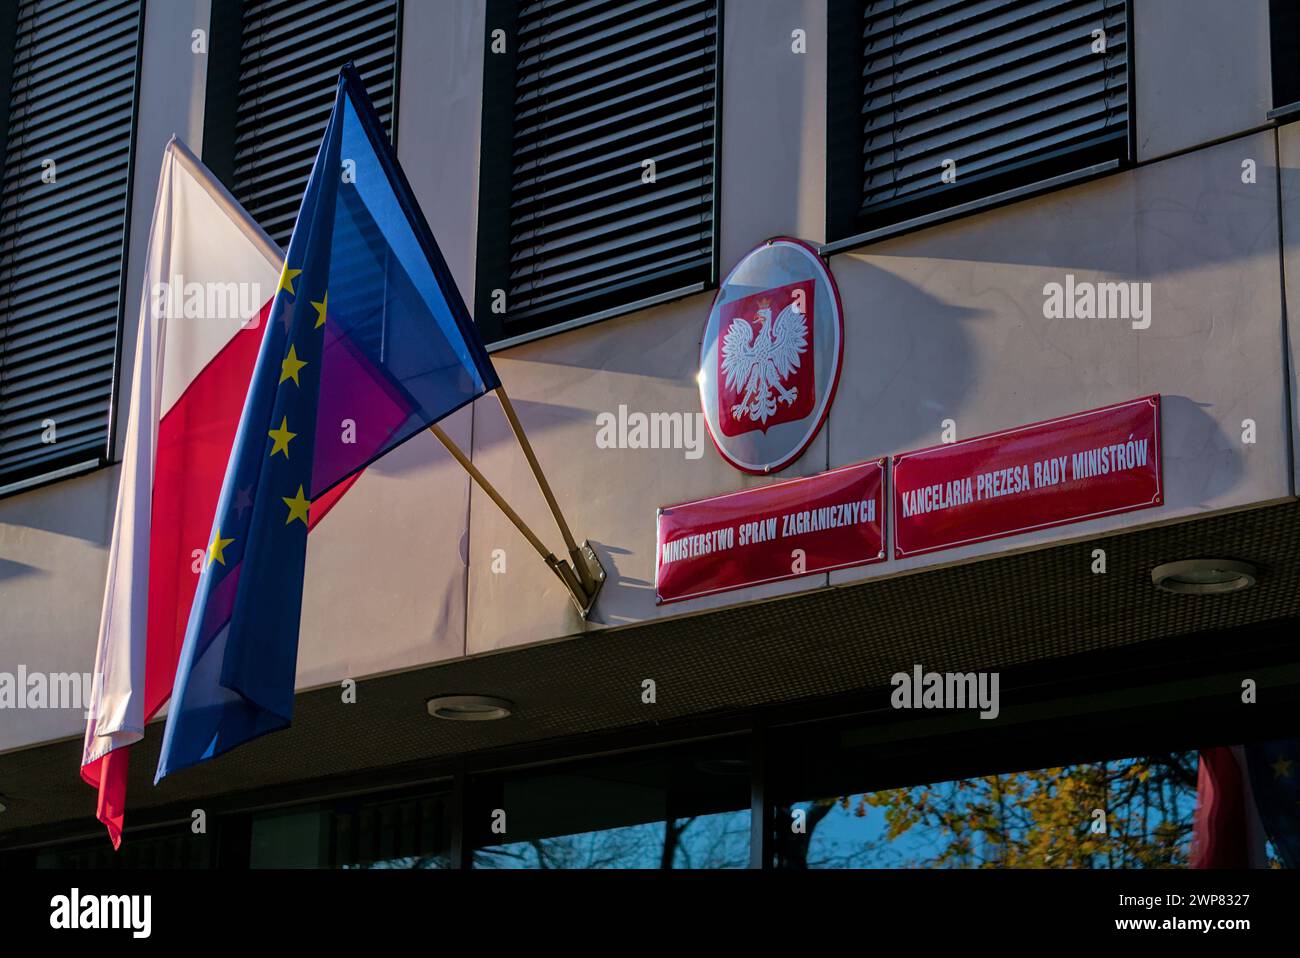 Farbenfrohes Foto der offiziellen Metalltafel mit dem Namen des Außenministeriums und den Flaggen Polens und der Europäischen union Stockfoto